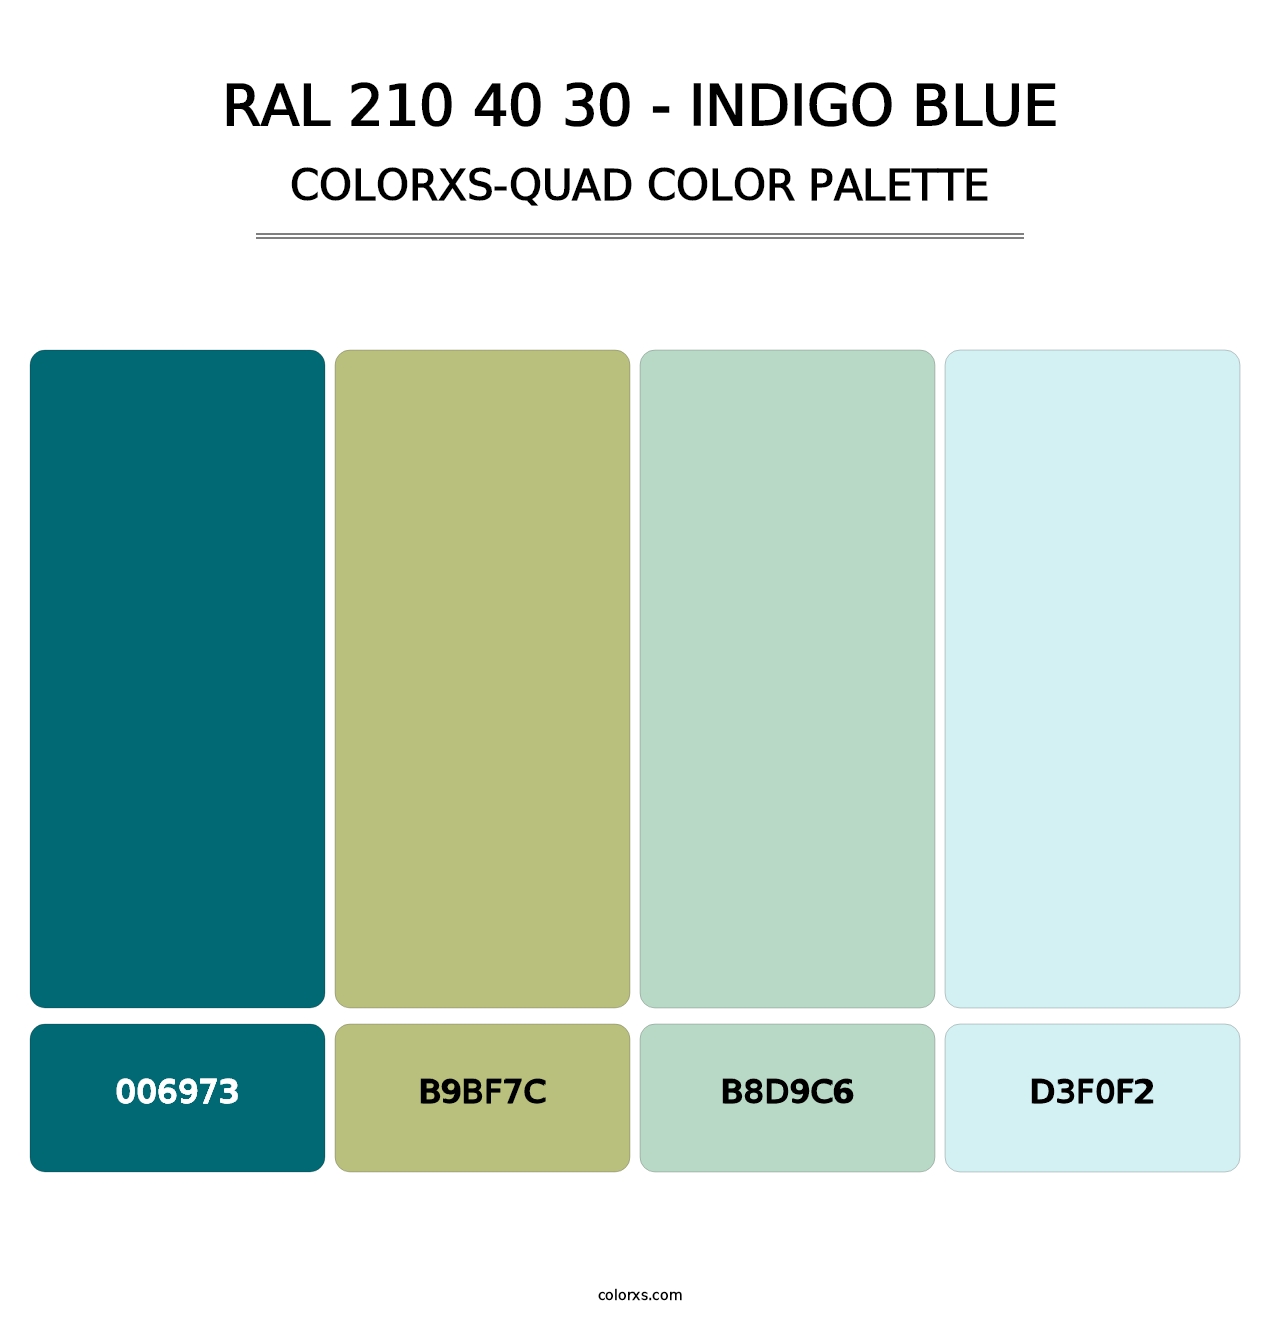 RAL 210 40 30 - Indigo Blue - Colorxs Quad Palette